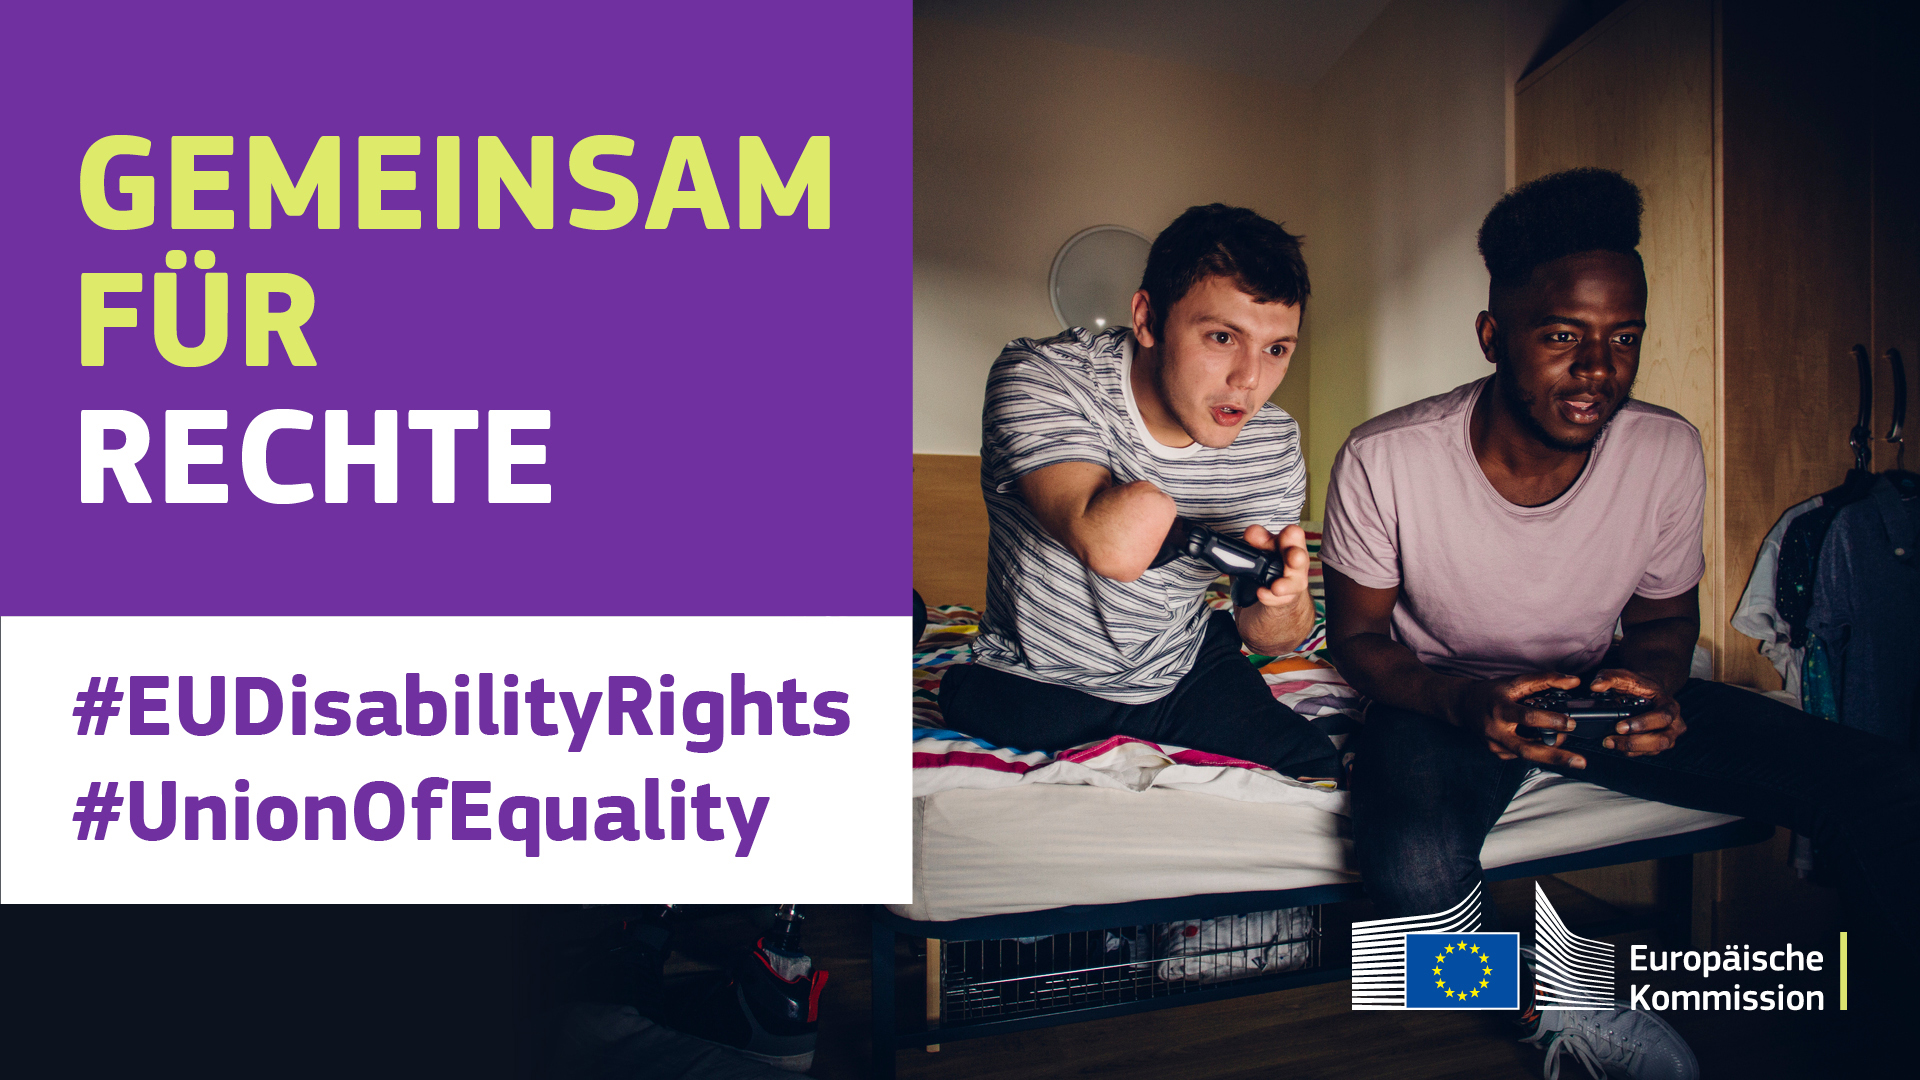 Männer spielen mit Controllern Videospiele. Einem fehlen die Beine und ein Arm. Text besagt: Gemeinsam für Rechte, #EUDisabilityRights, #UnionOfEquality.